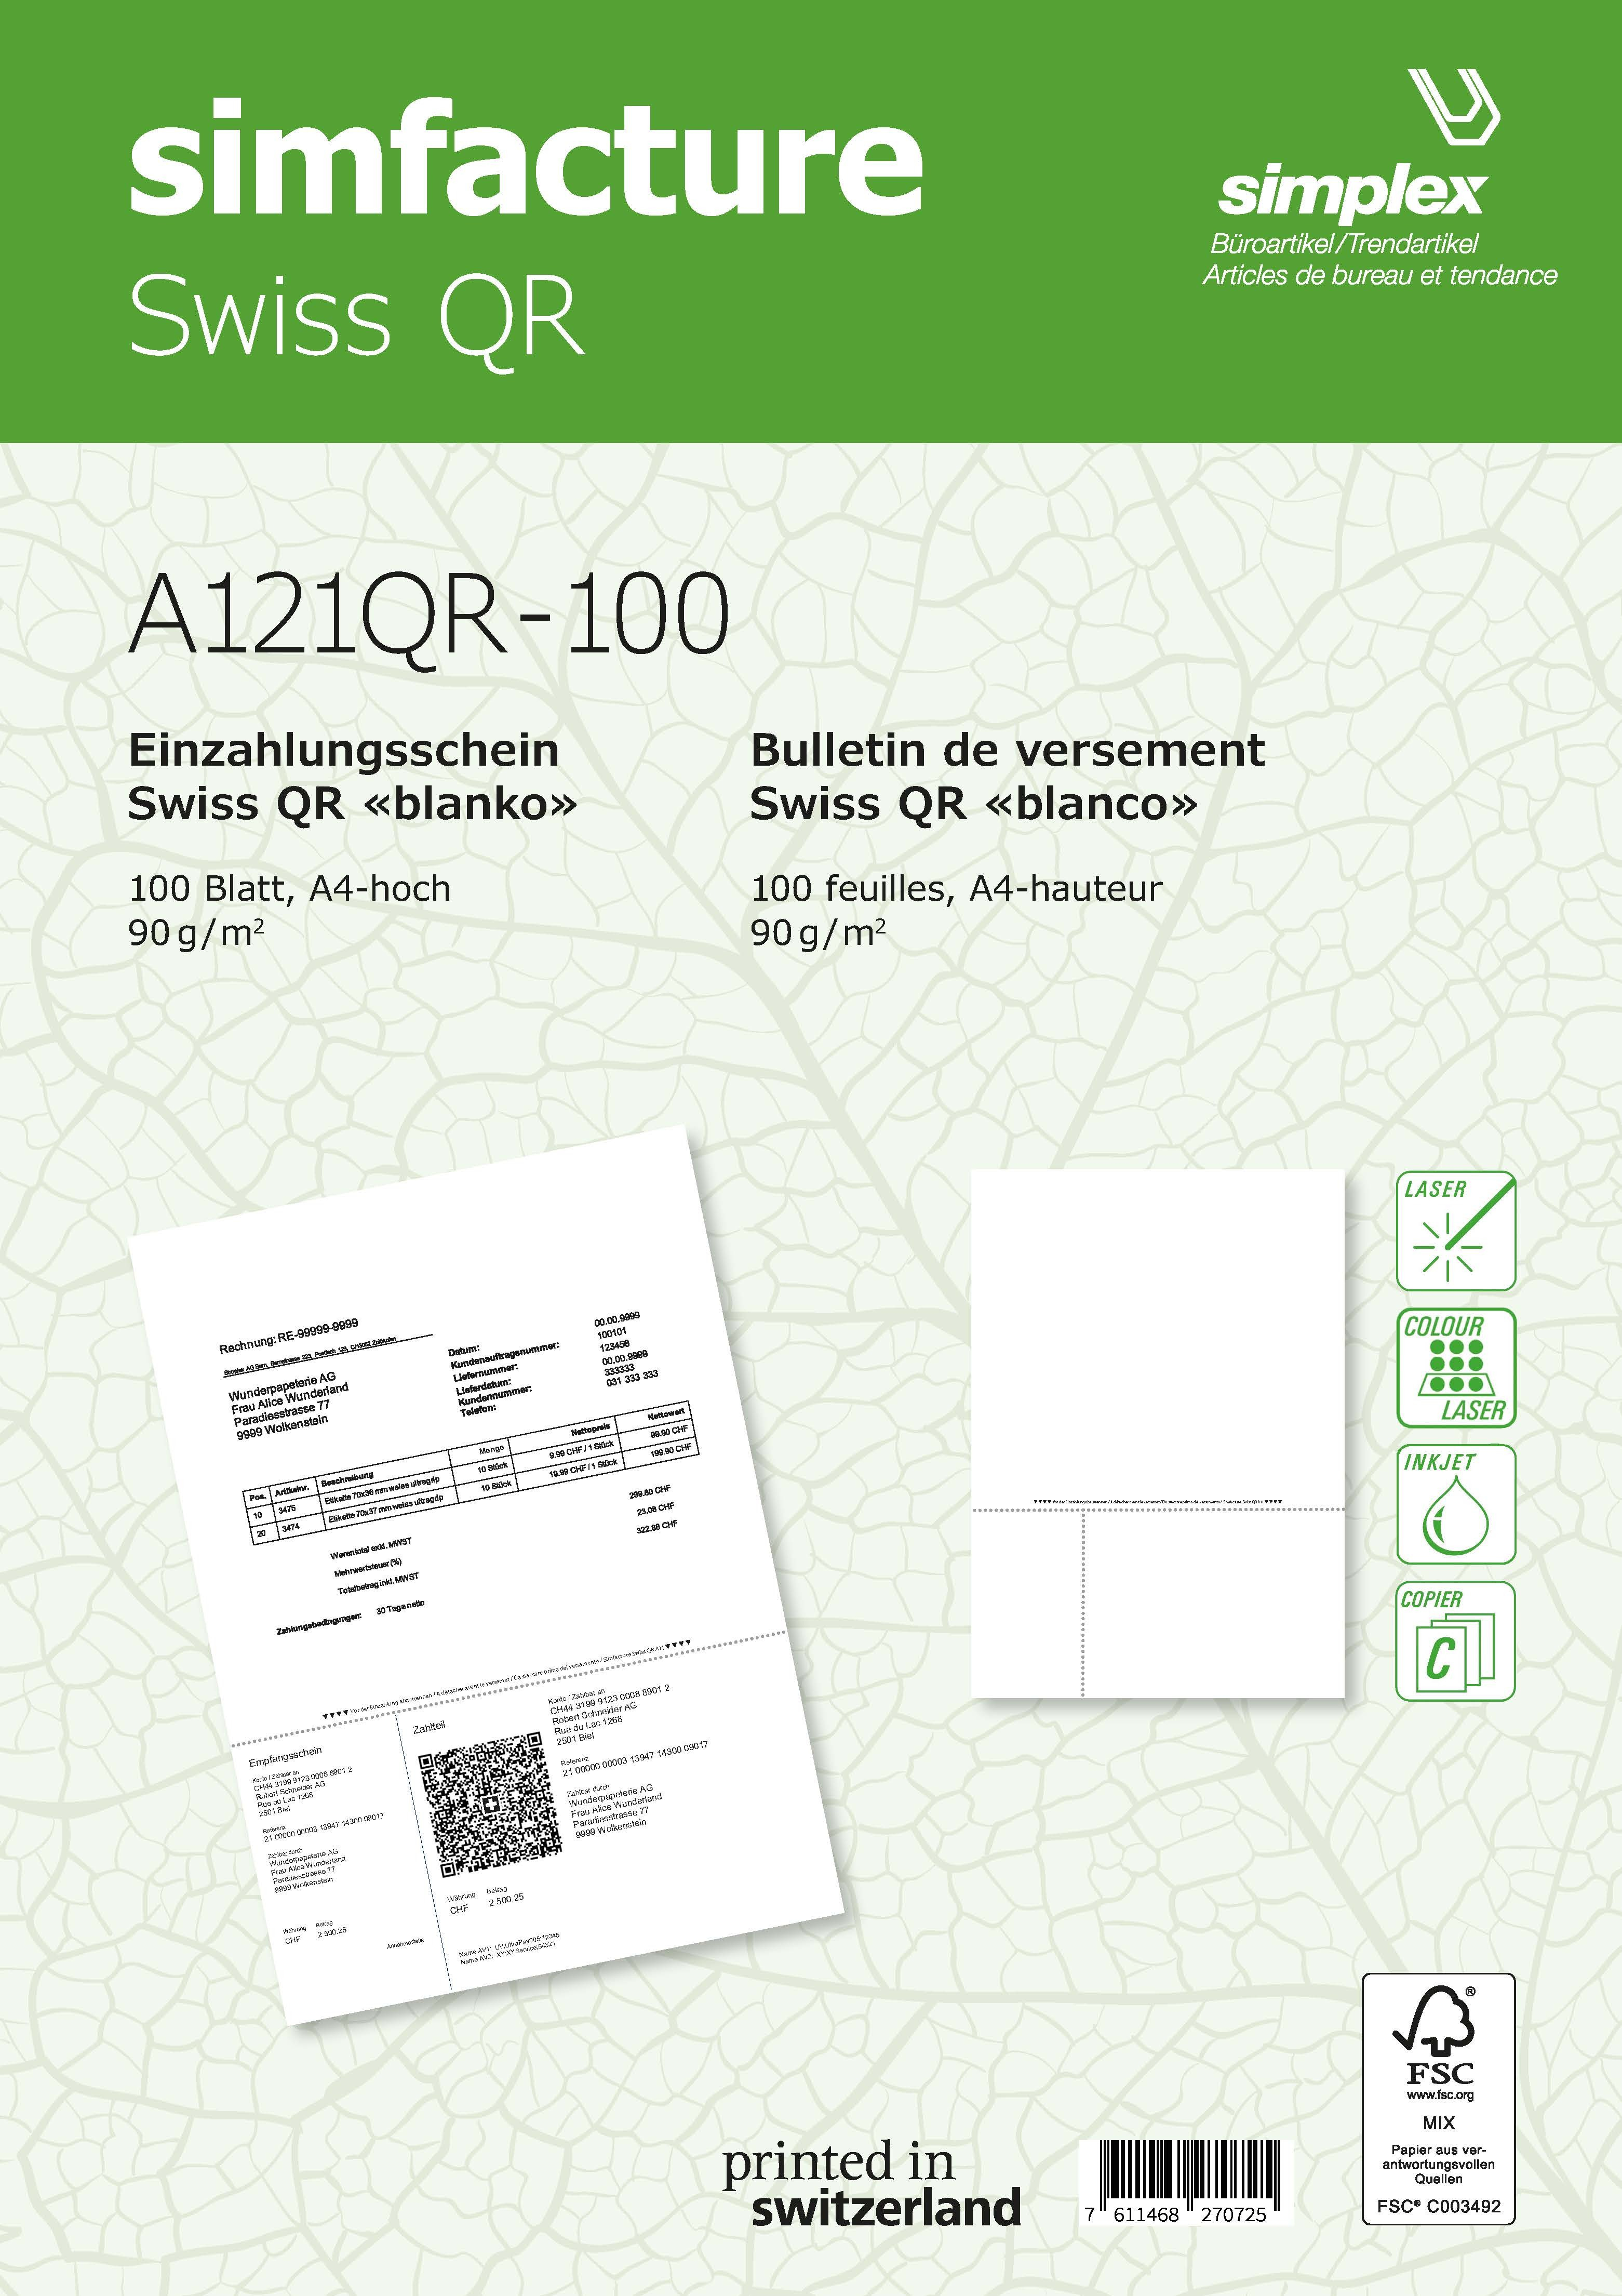 SIMPLEX Simfacture Swiss QR FSC A4 A121QR-100 universal, 90g 100 Blatt